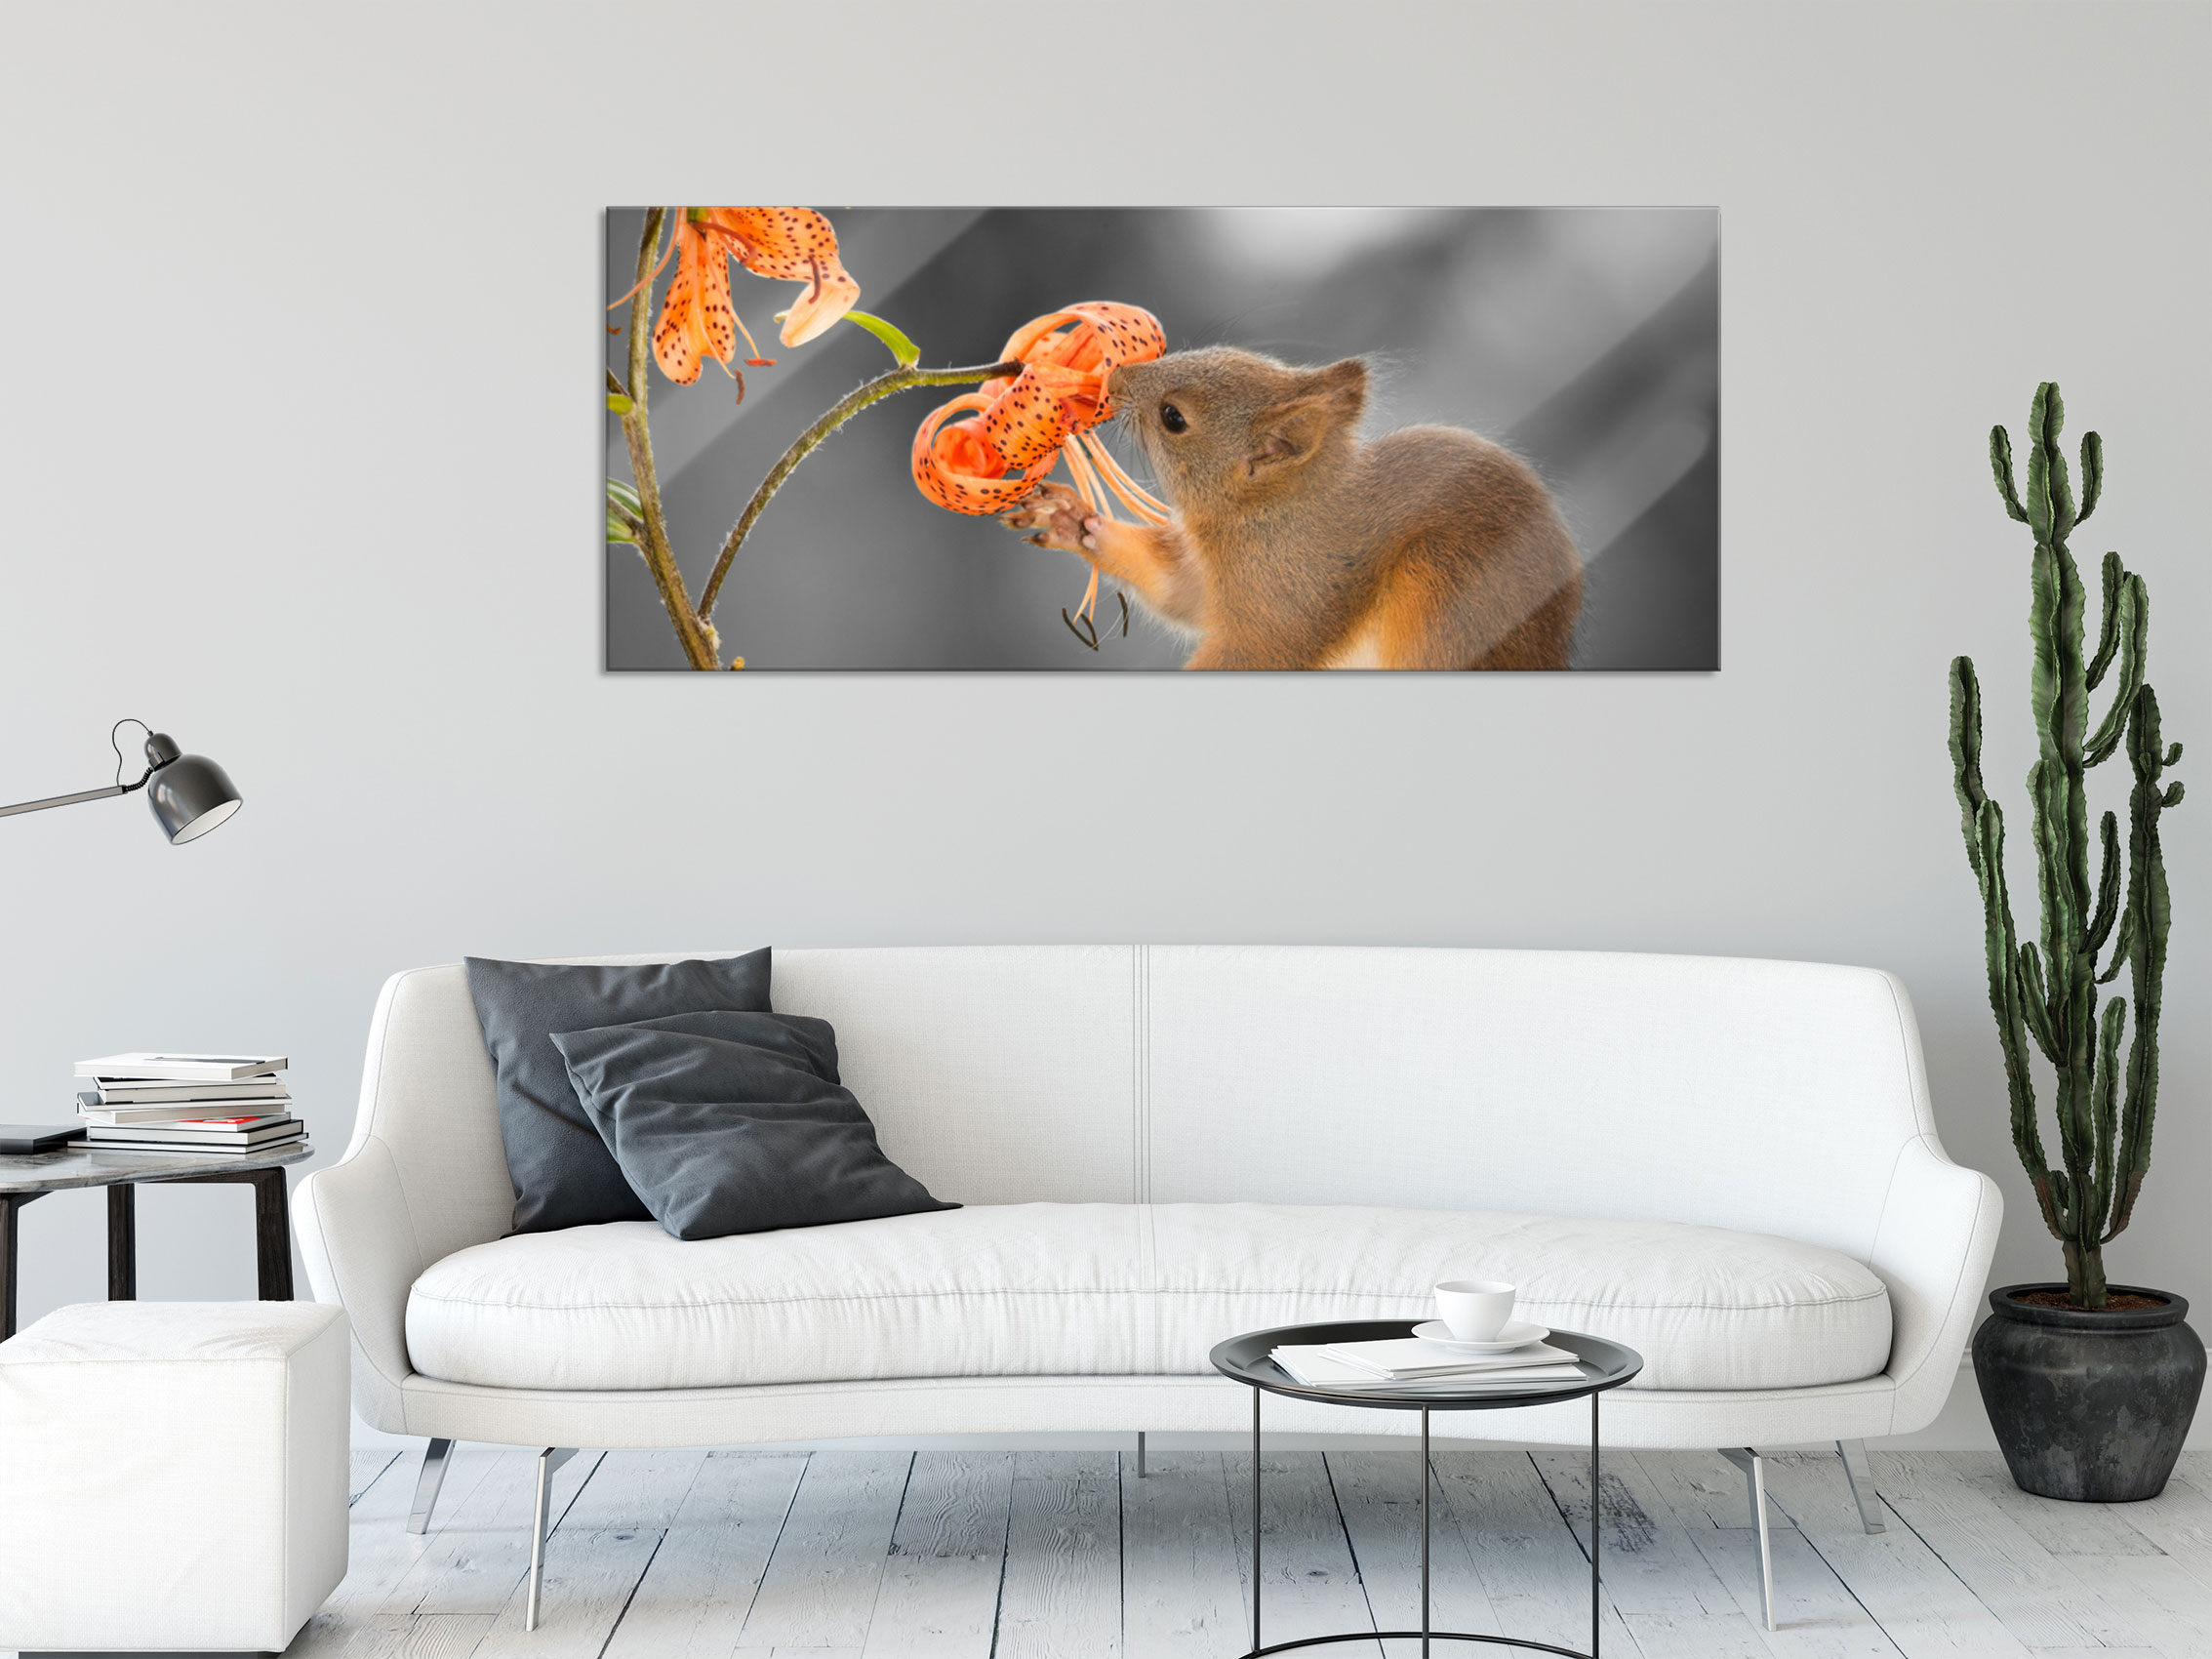 einer inkl. Glasbild, Blume Wandhalterung eBay Panorama Eichhörnchen riecht | an